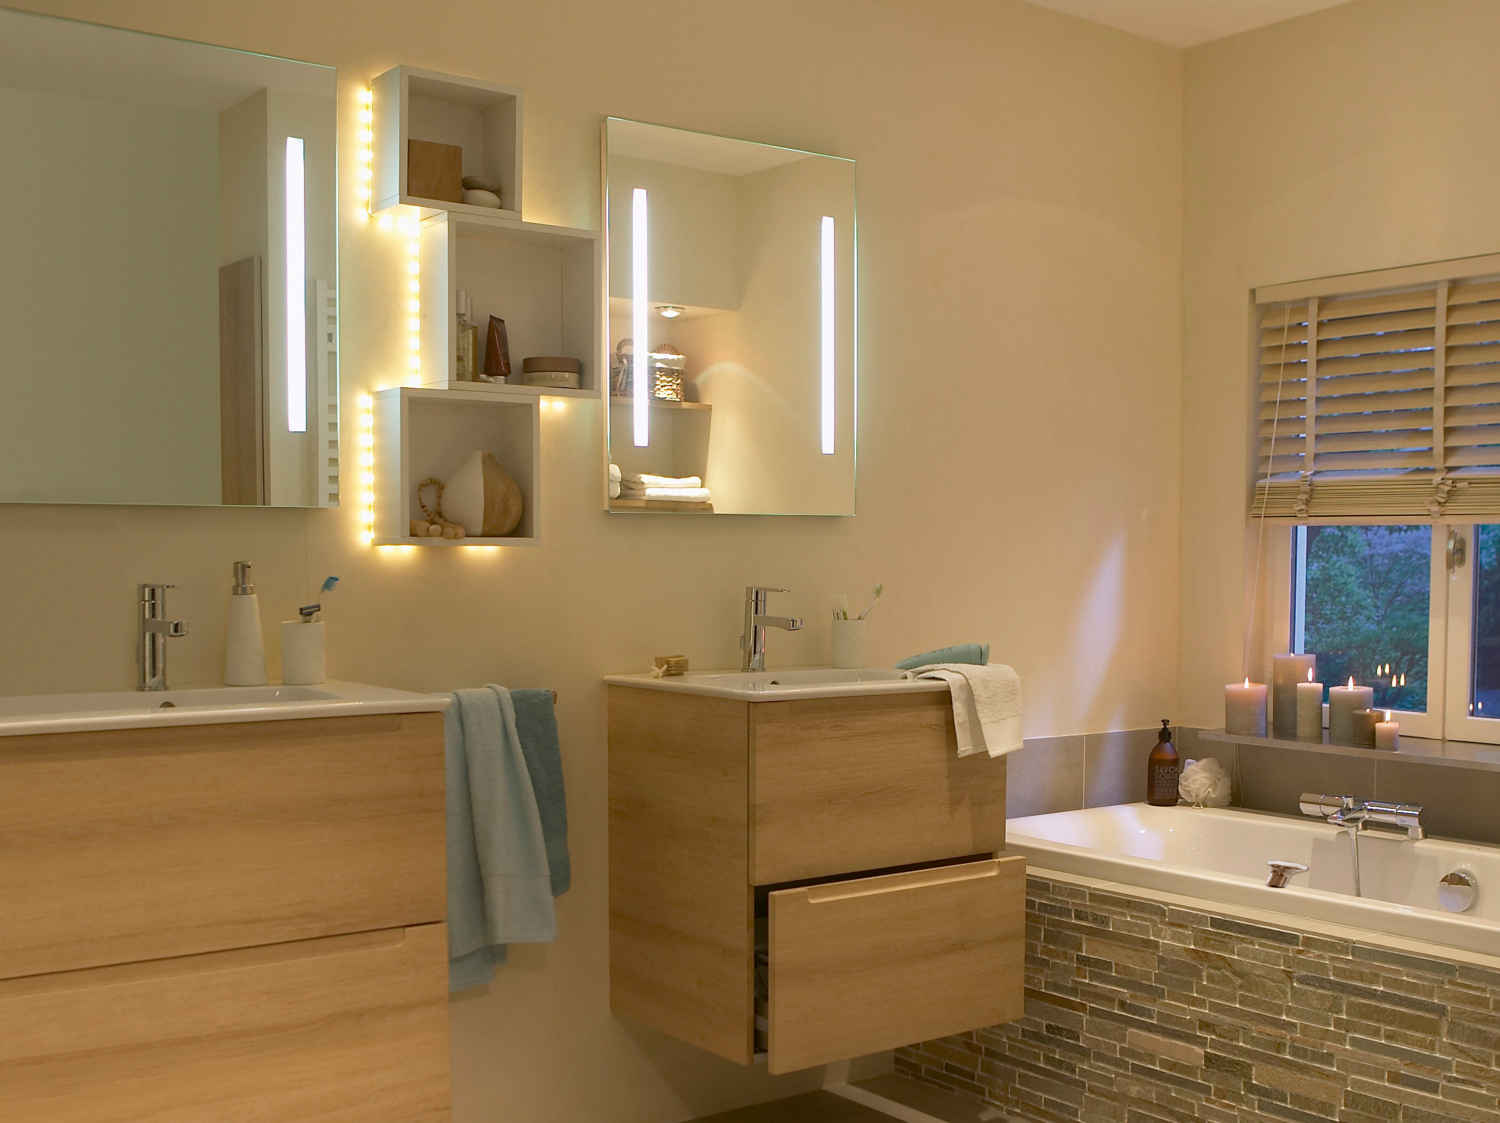 Éclairage LED de salle de bain – Luminaires intérieurs pour pièce d'eau